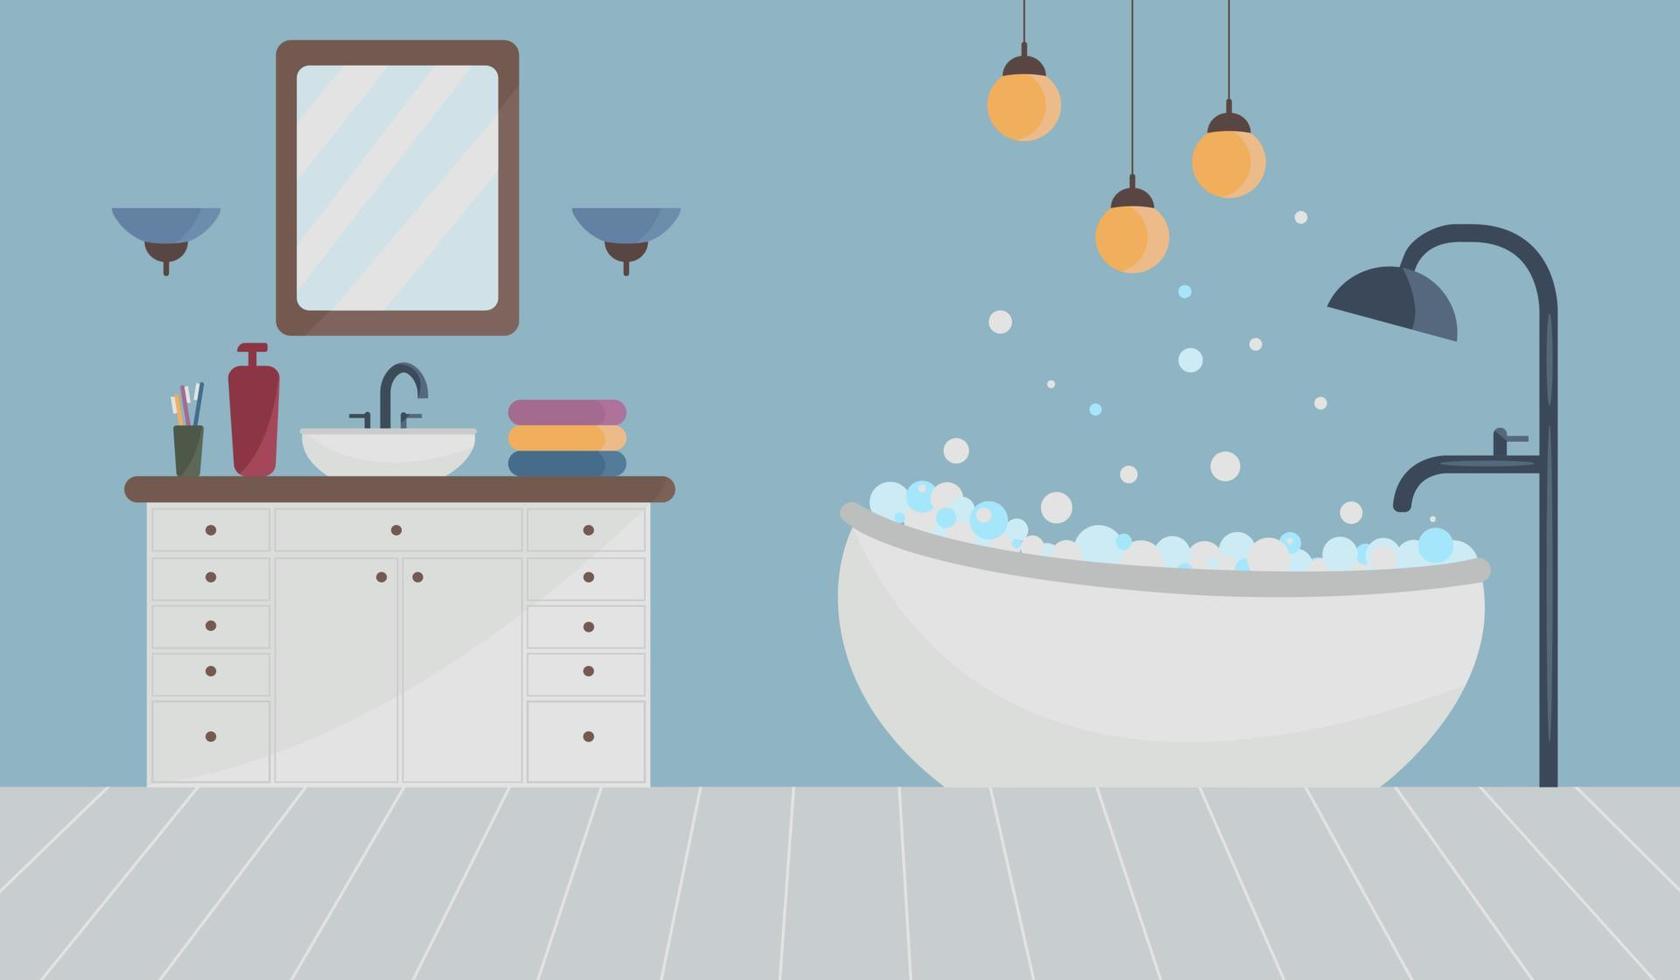 uma ilustração do interior de um banheiro com a imagem de uma banheira cheia de espuma, além de um chuveiro e um misturador e luminárias penduradas no teto. ilustração vetorial. vetor